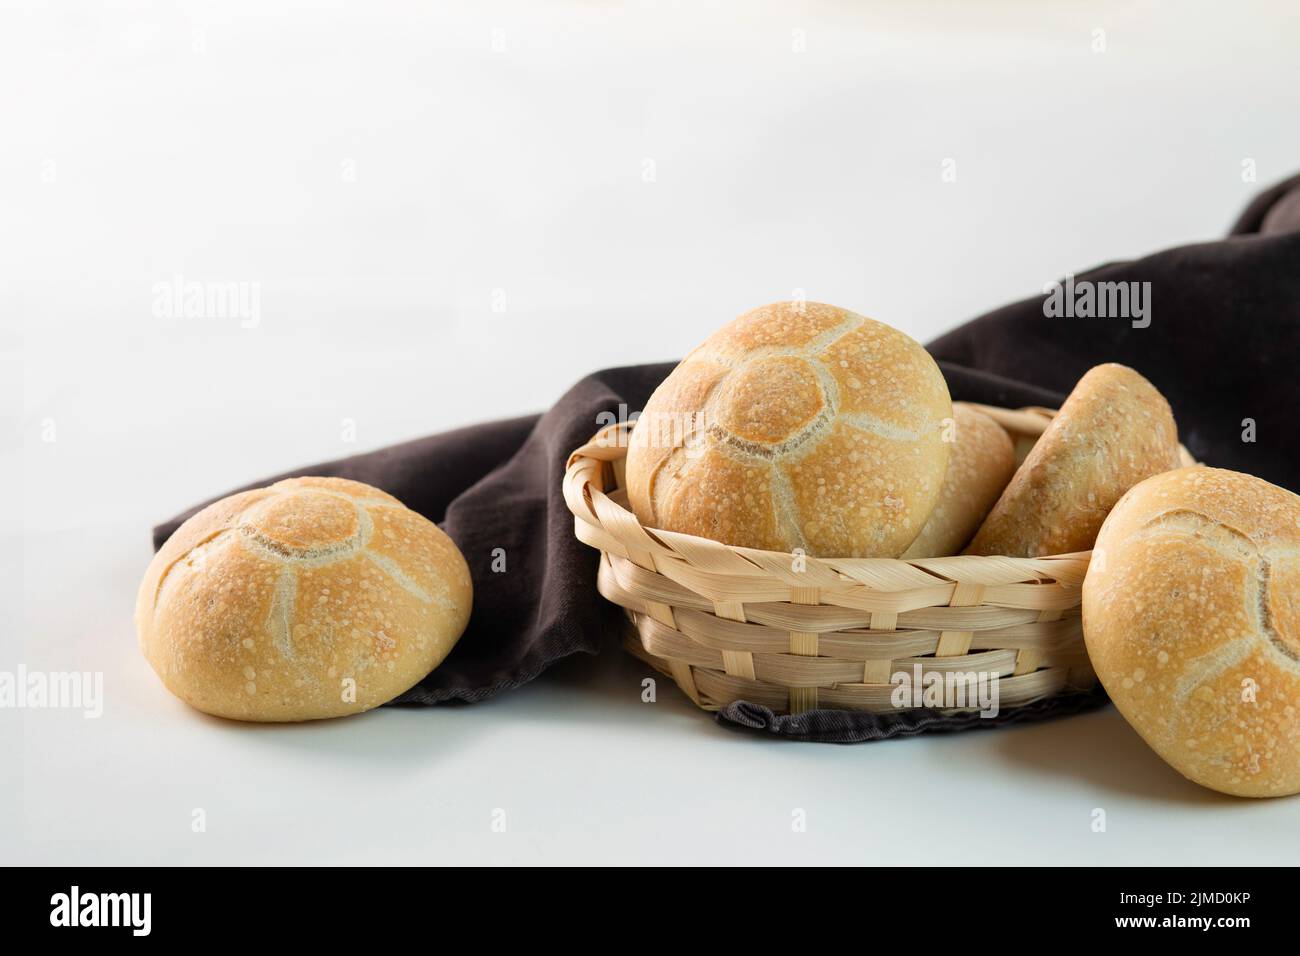 Deliciosos bollos recién horneados colocados en un tazón de mimbre cerca de tela marrón sobre fondo blanco Foto de stock